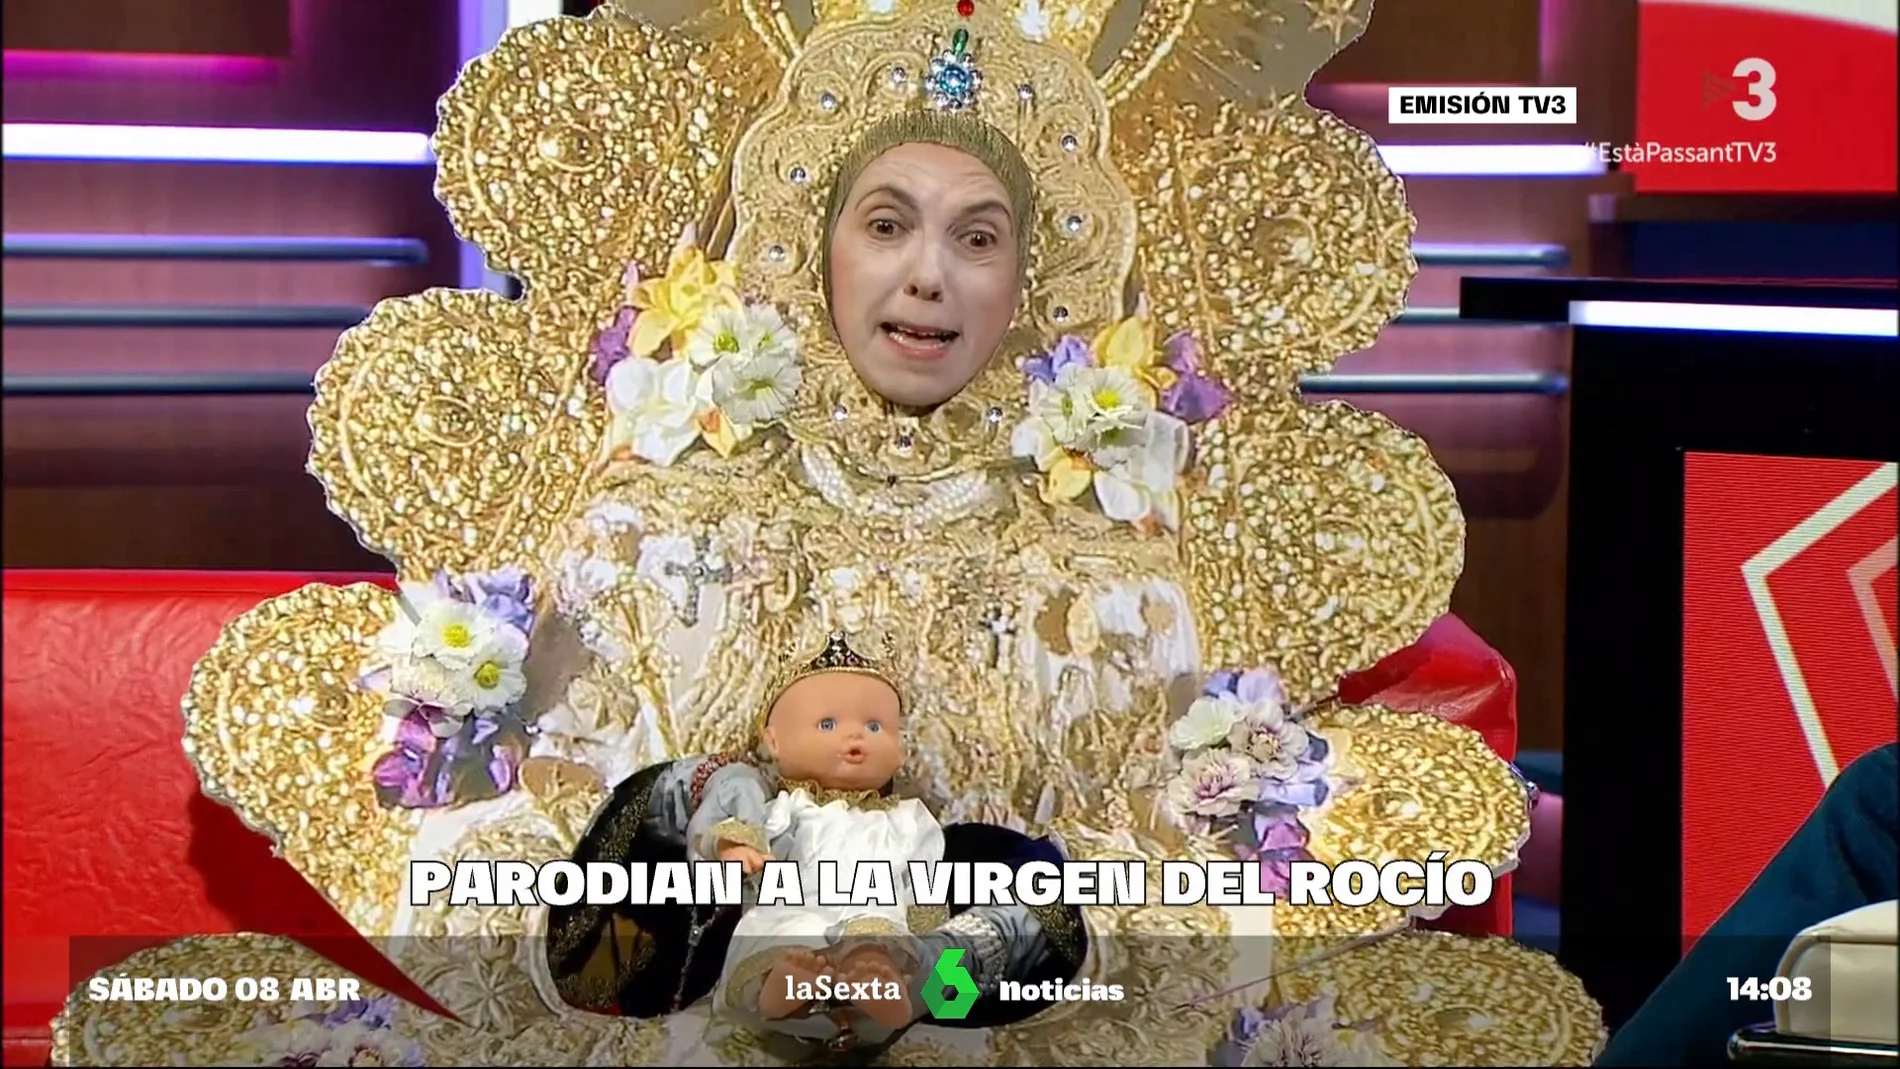 TV3 siembra la polémica al ironizar sobre la Virgen del Rocío simulando el acento andaluz